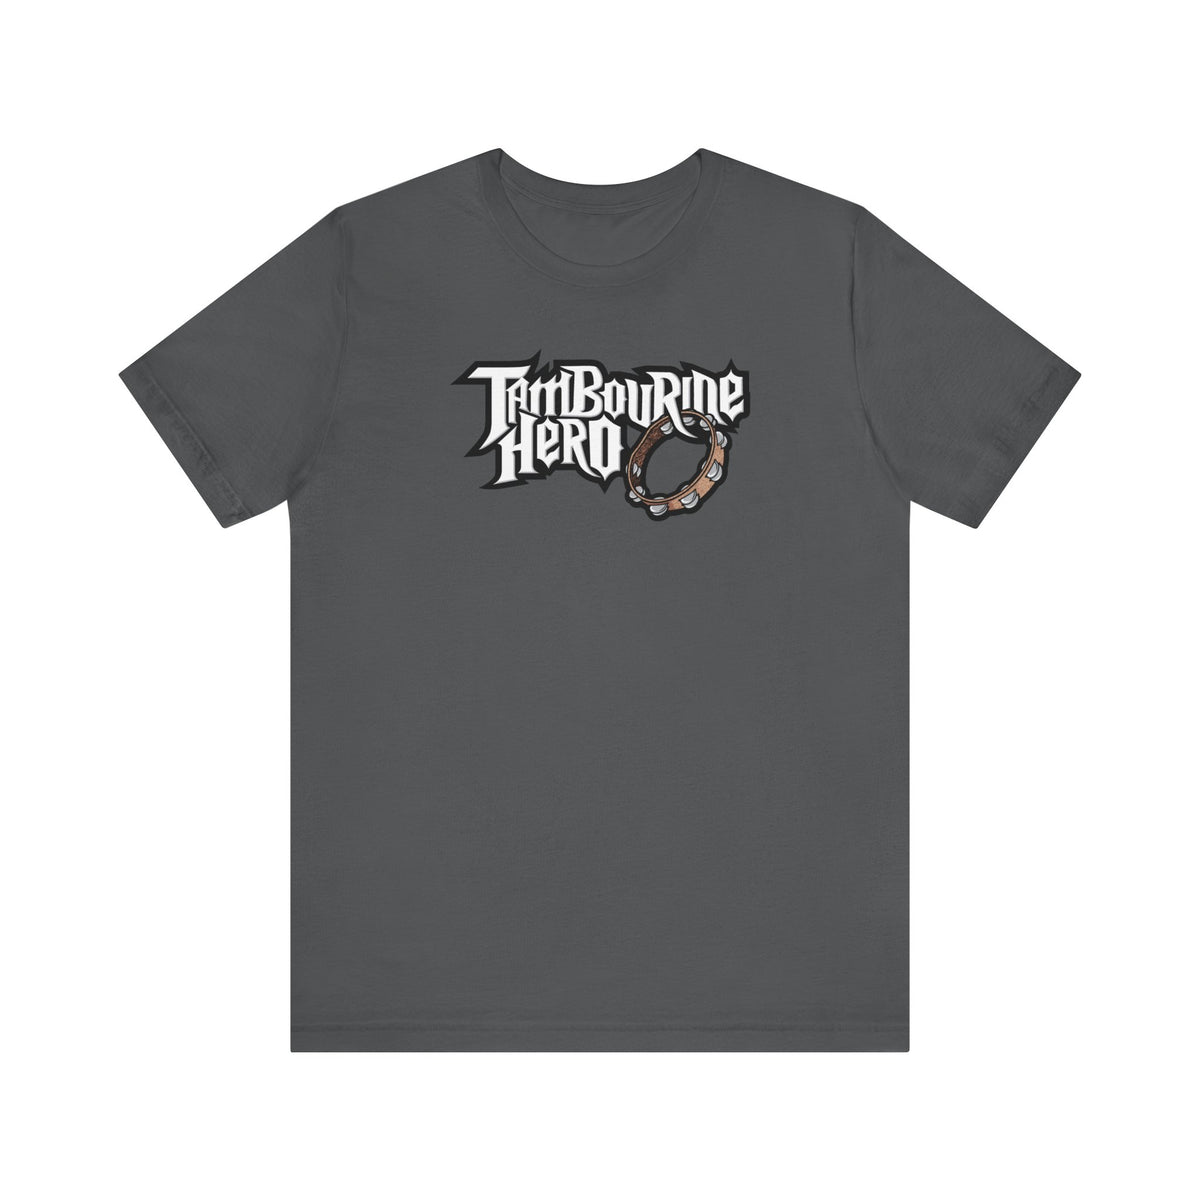 Tambourine Hero - Men's T-Shirt